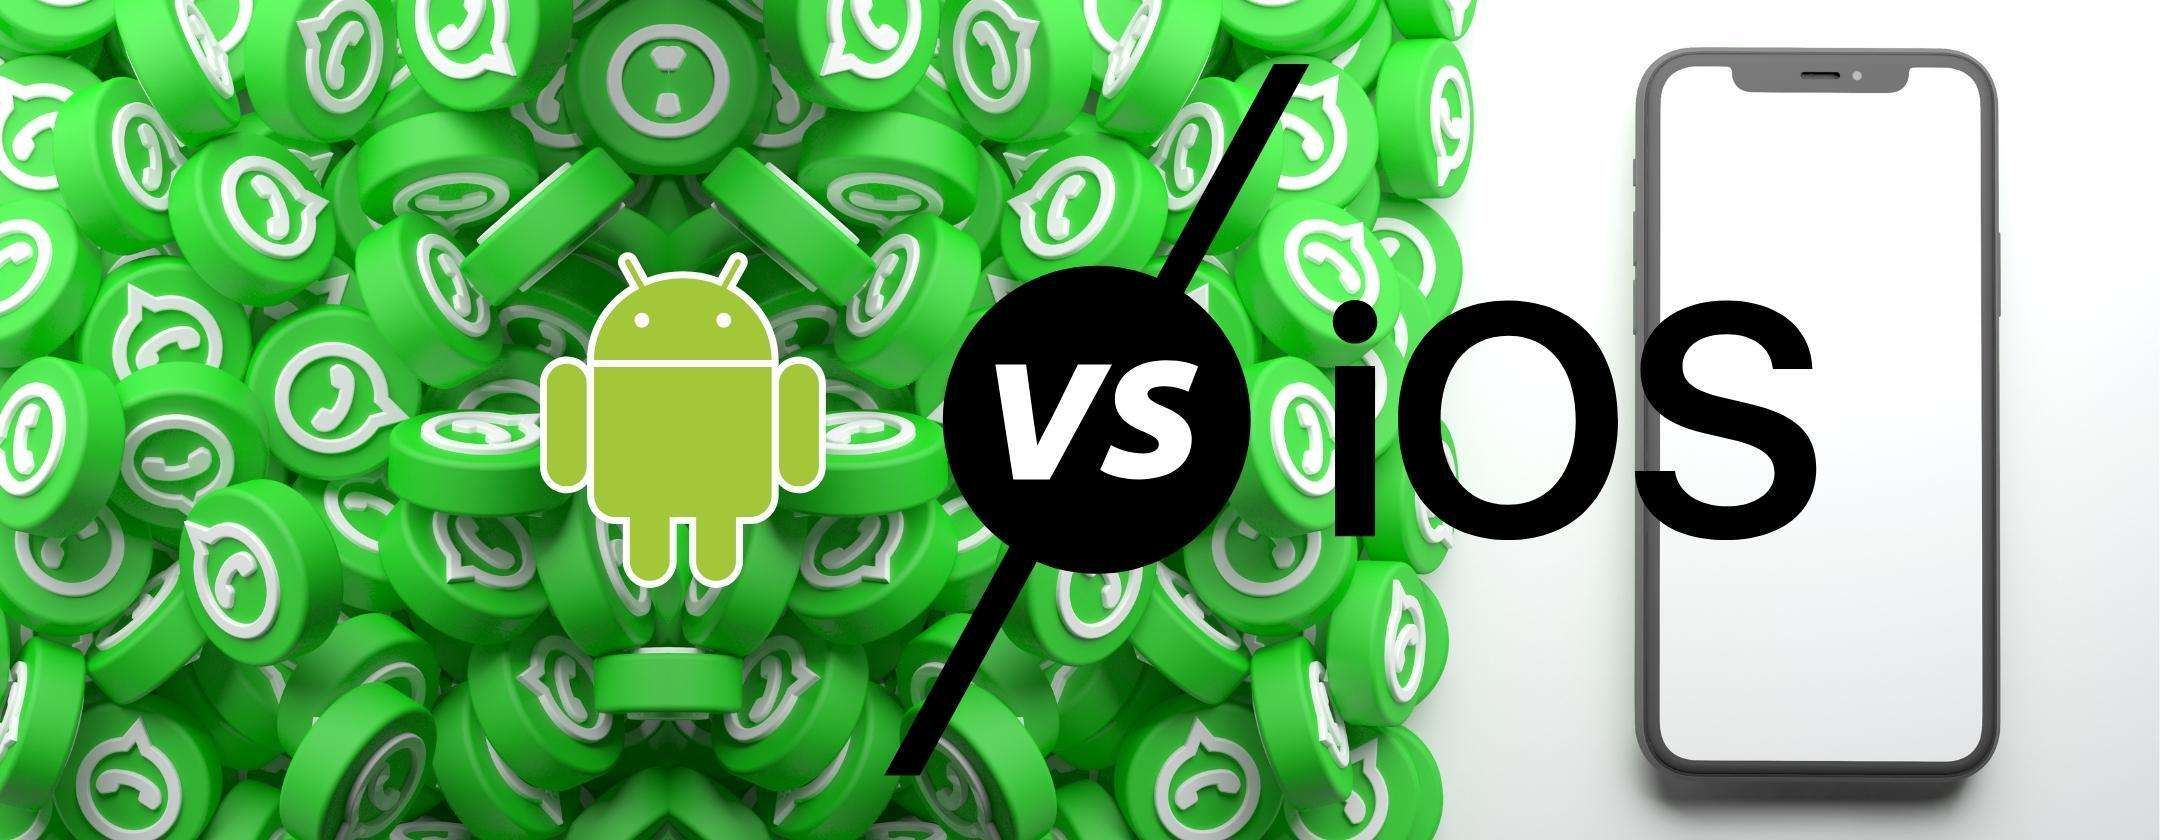 WhatsApp: ecco le funzionalità esclusive per Android e iOS